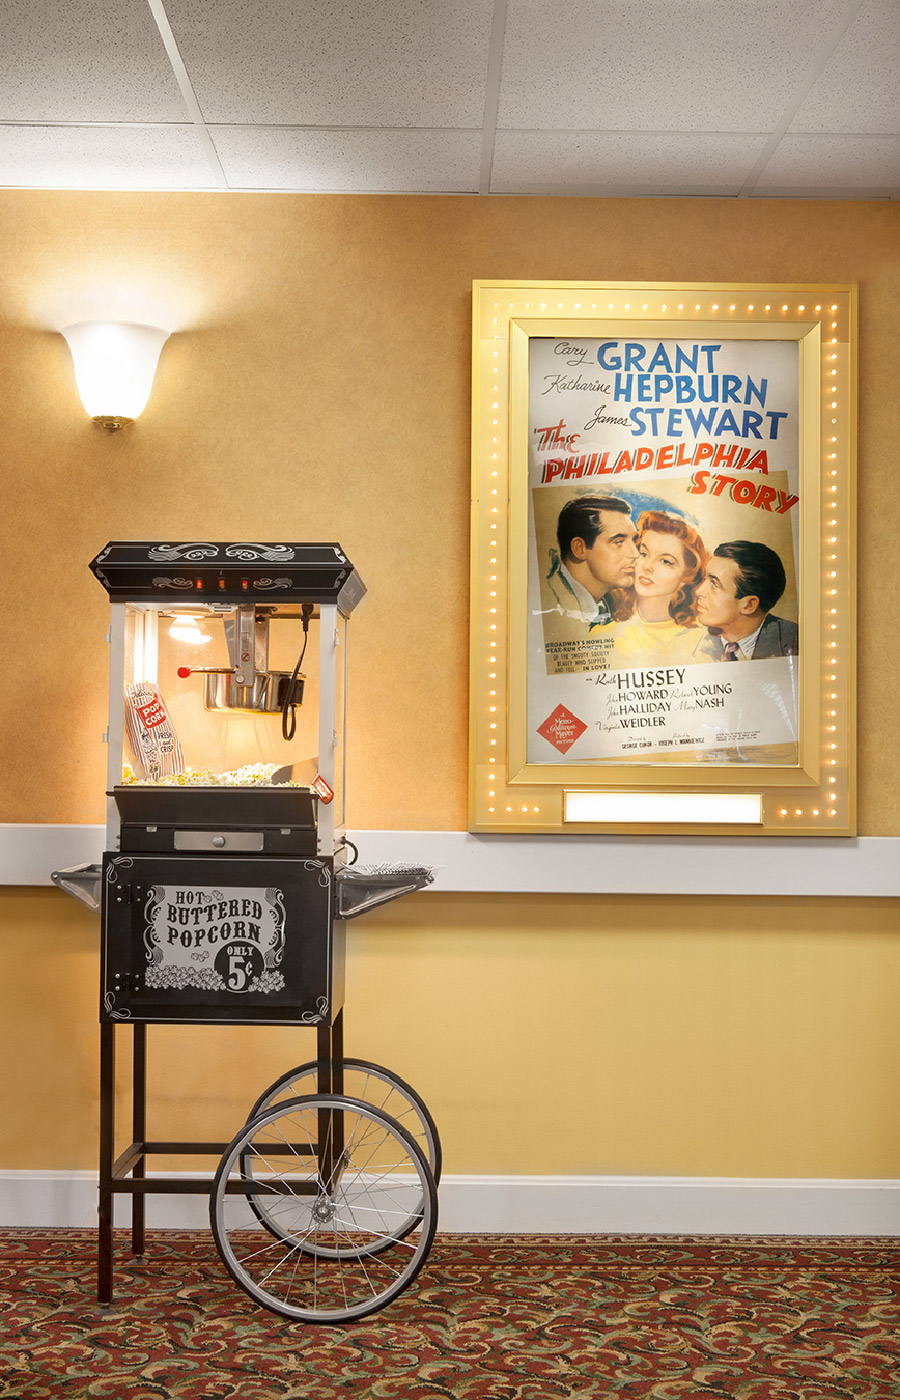 Popcorn machine by movie poster.